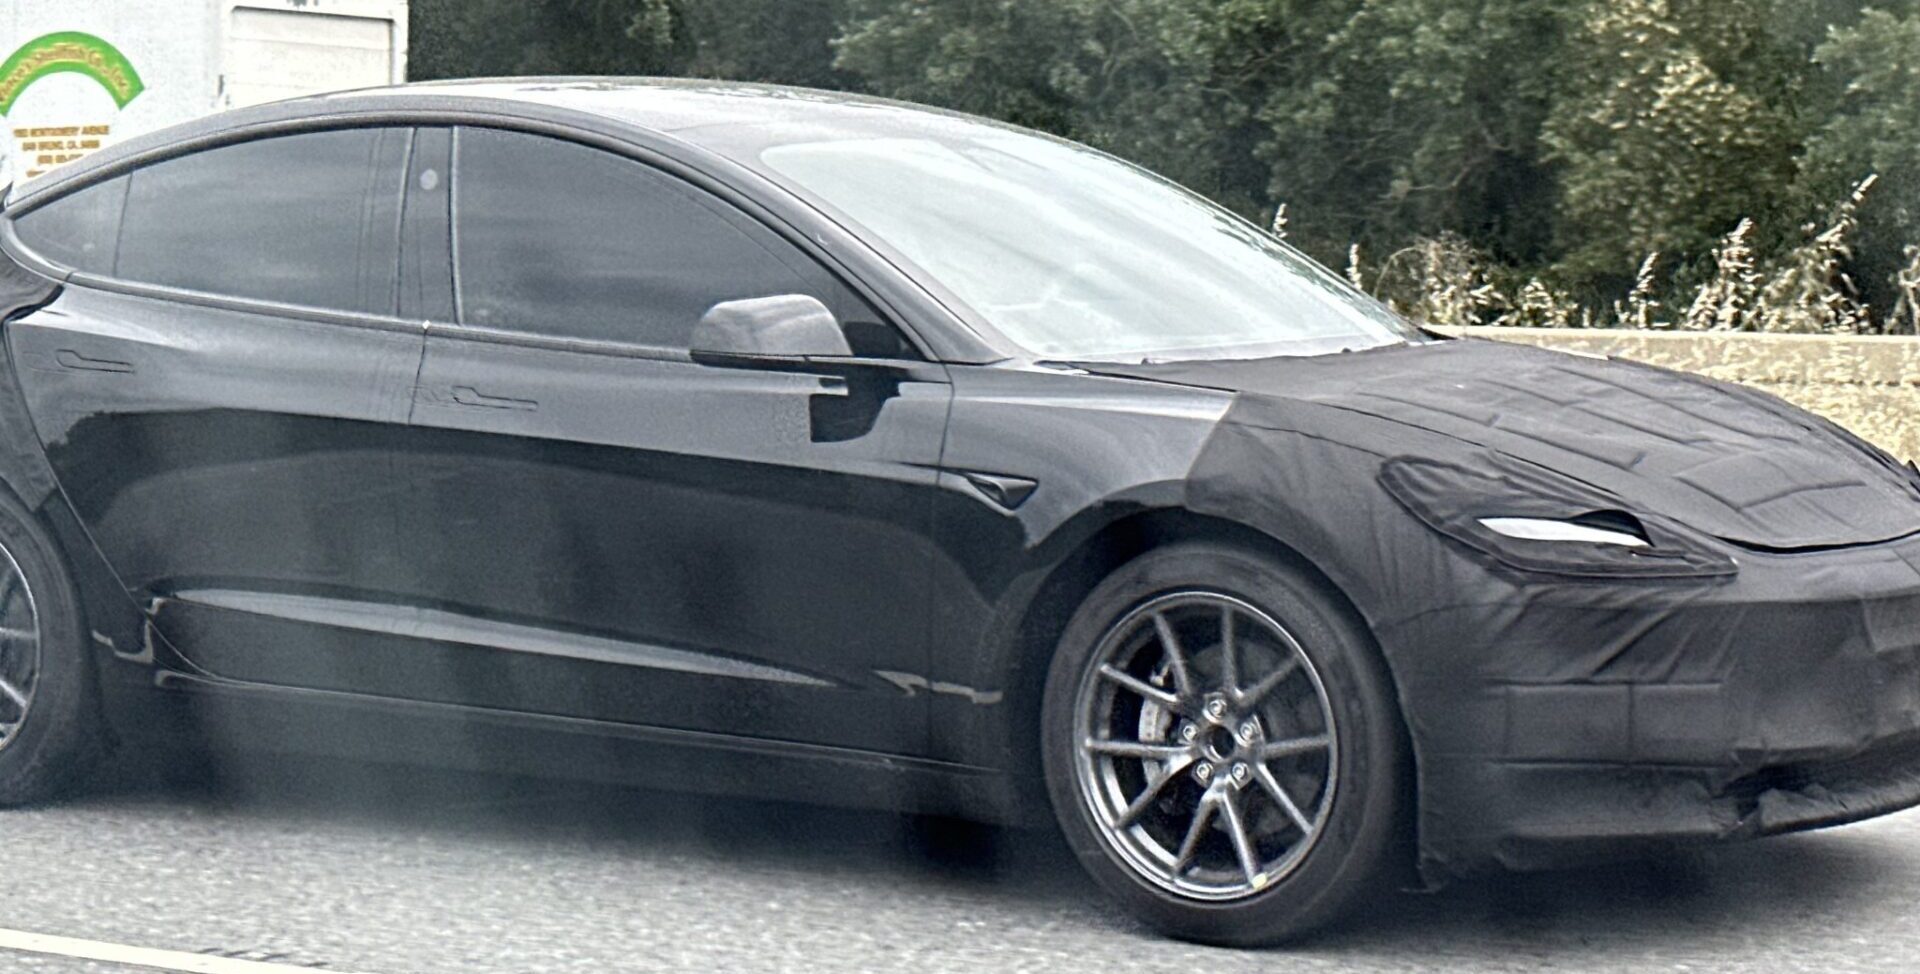 Прототип White Tesla Model 3 «Project Highland» демонстрирует интригующие новые детали